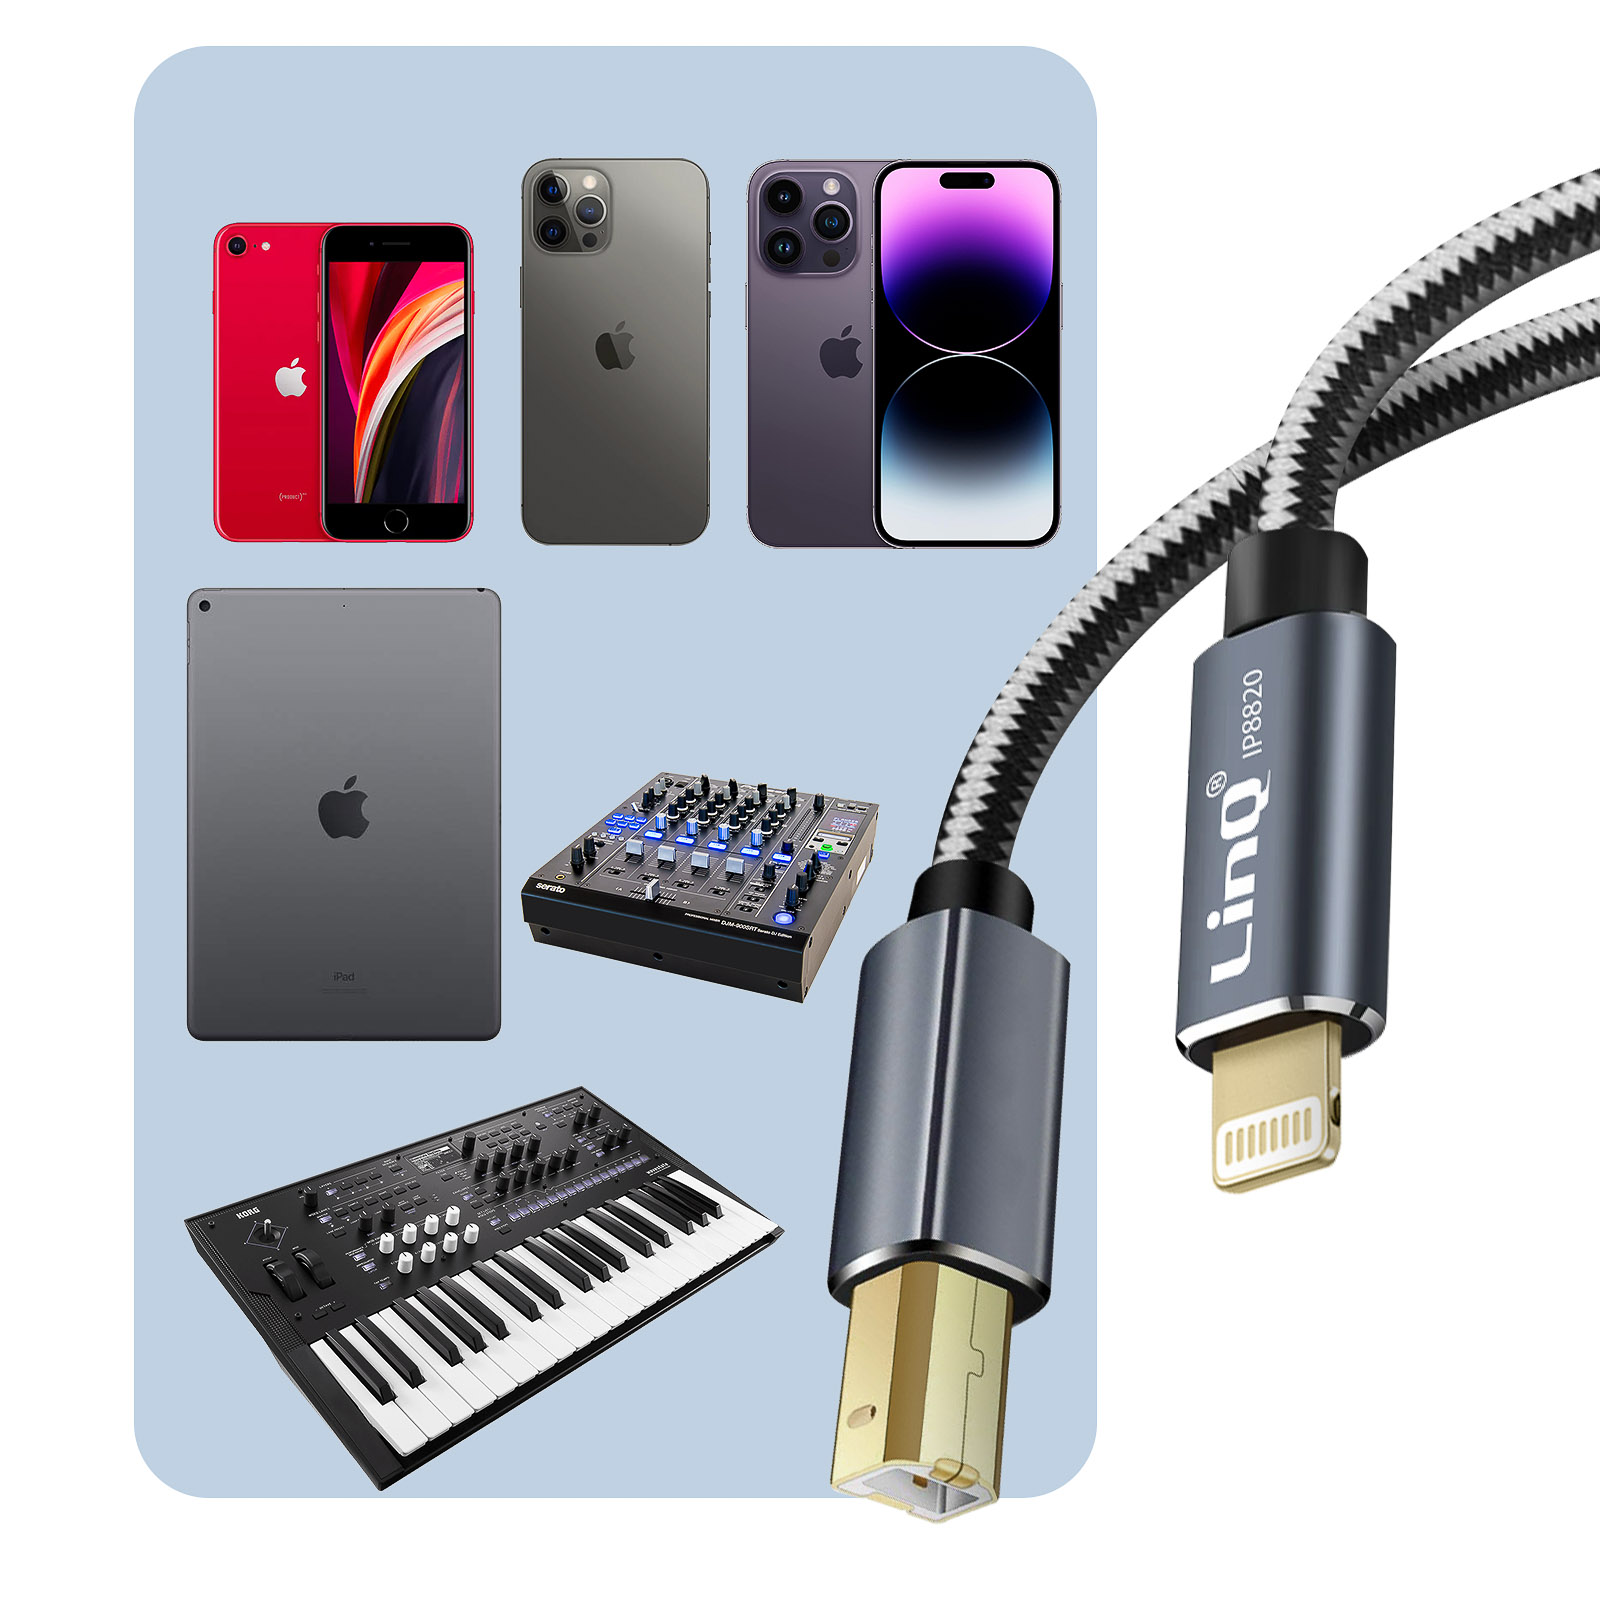 Cavo stampante per iPad e iPhone, da Lightning a USB tipo B in nylon  intrecciato, LinQ - 1 metro e 50 - Italiano